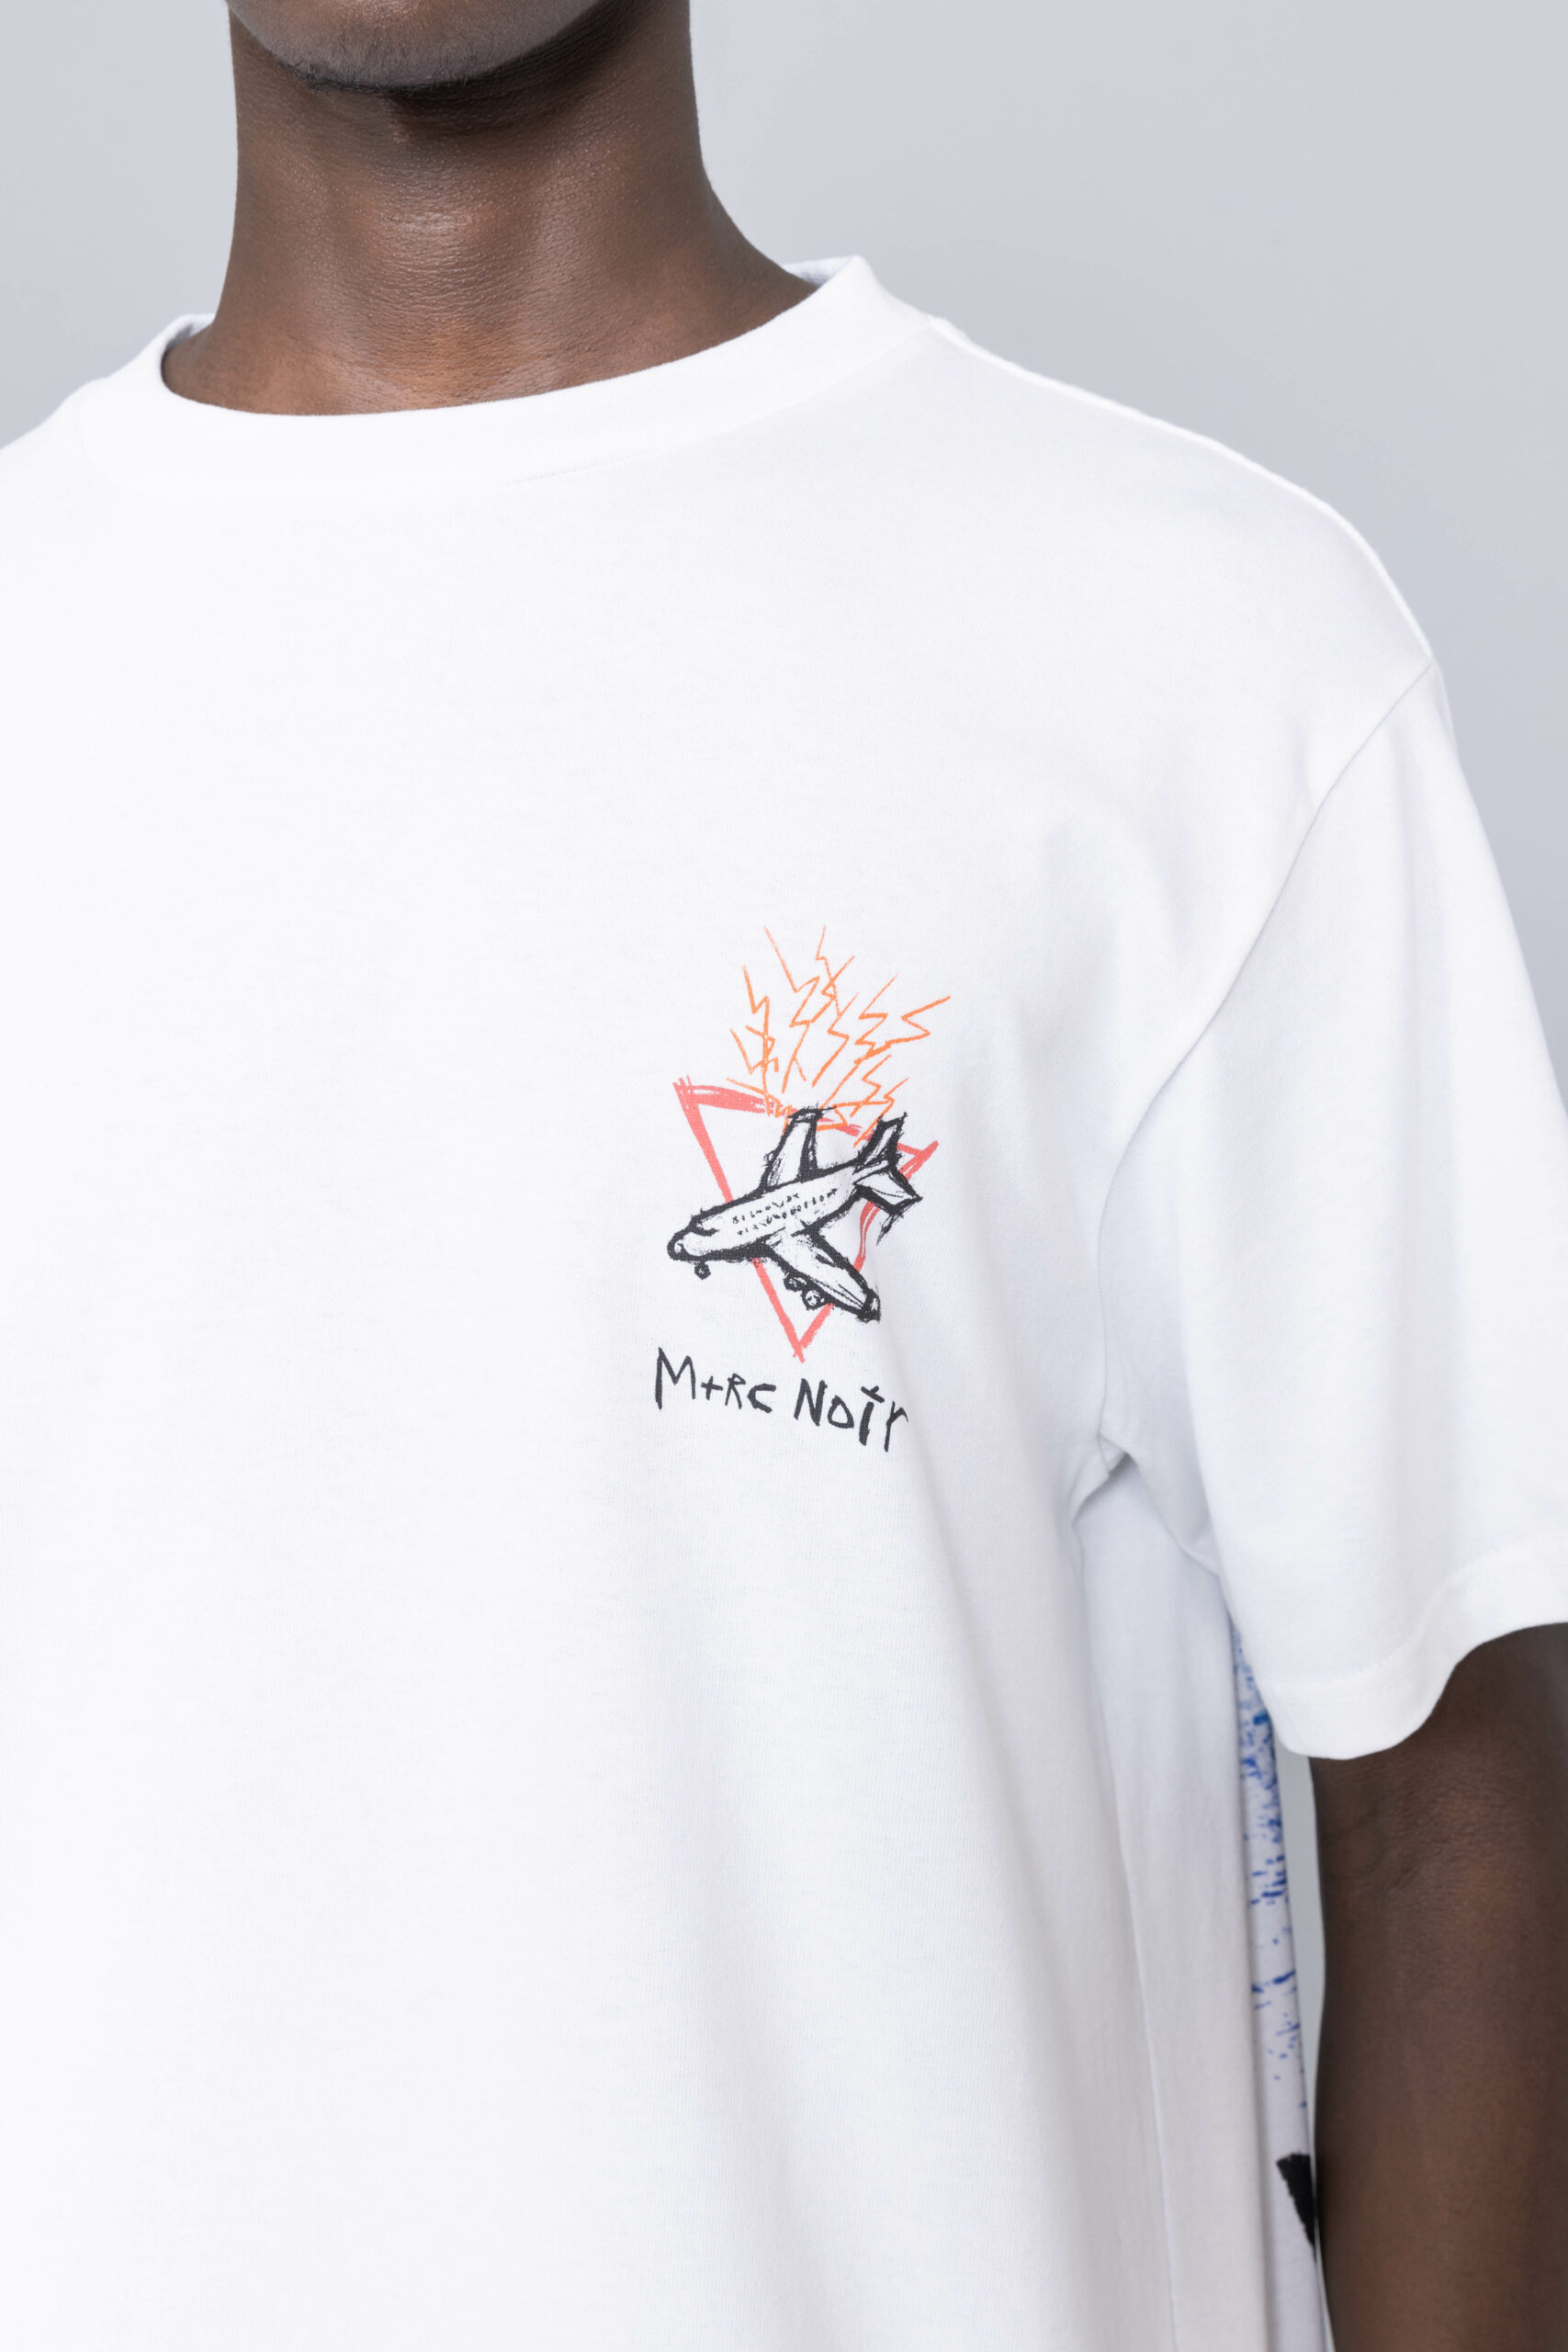 コピーをお Supreme - M+RC NOIR Big Logo T-Shirtの通販 by ひ's shop 